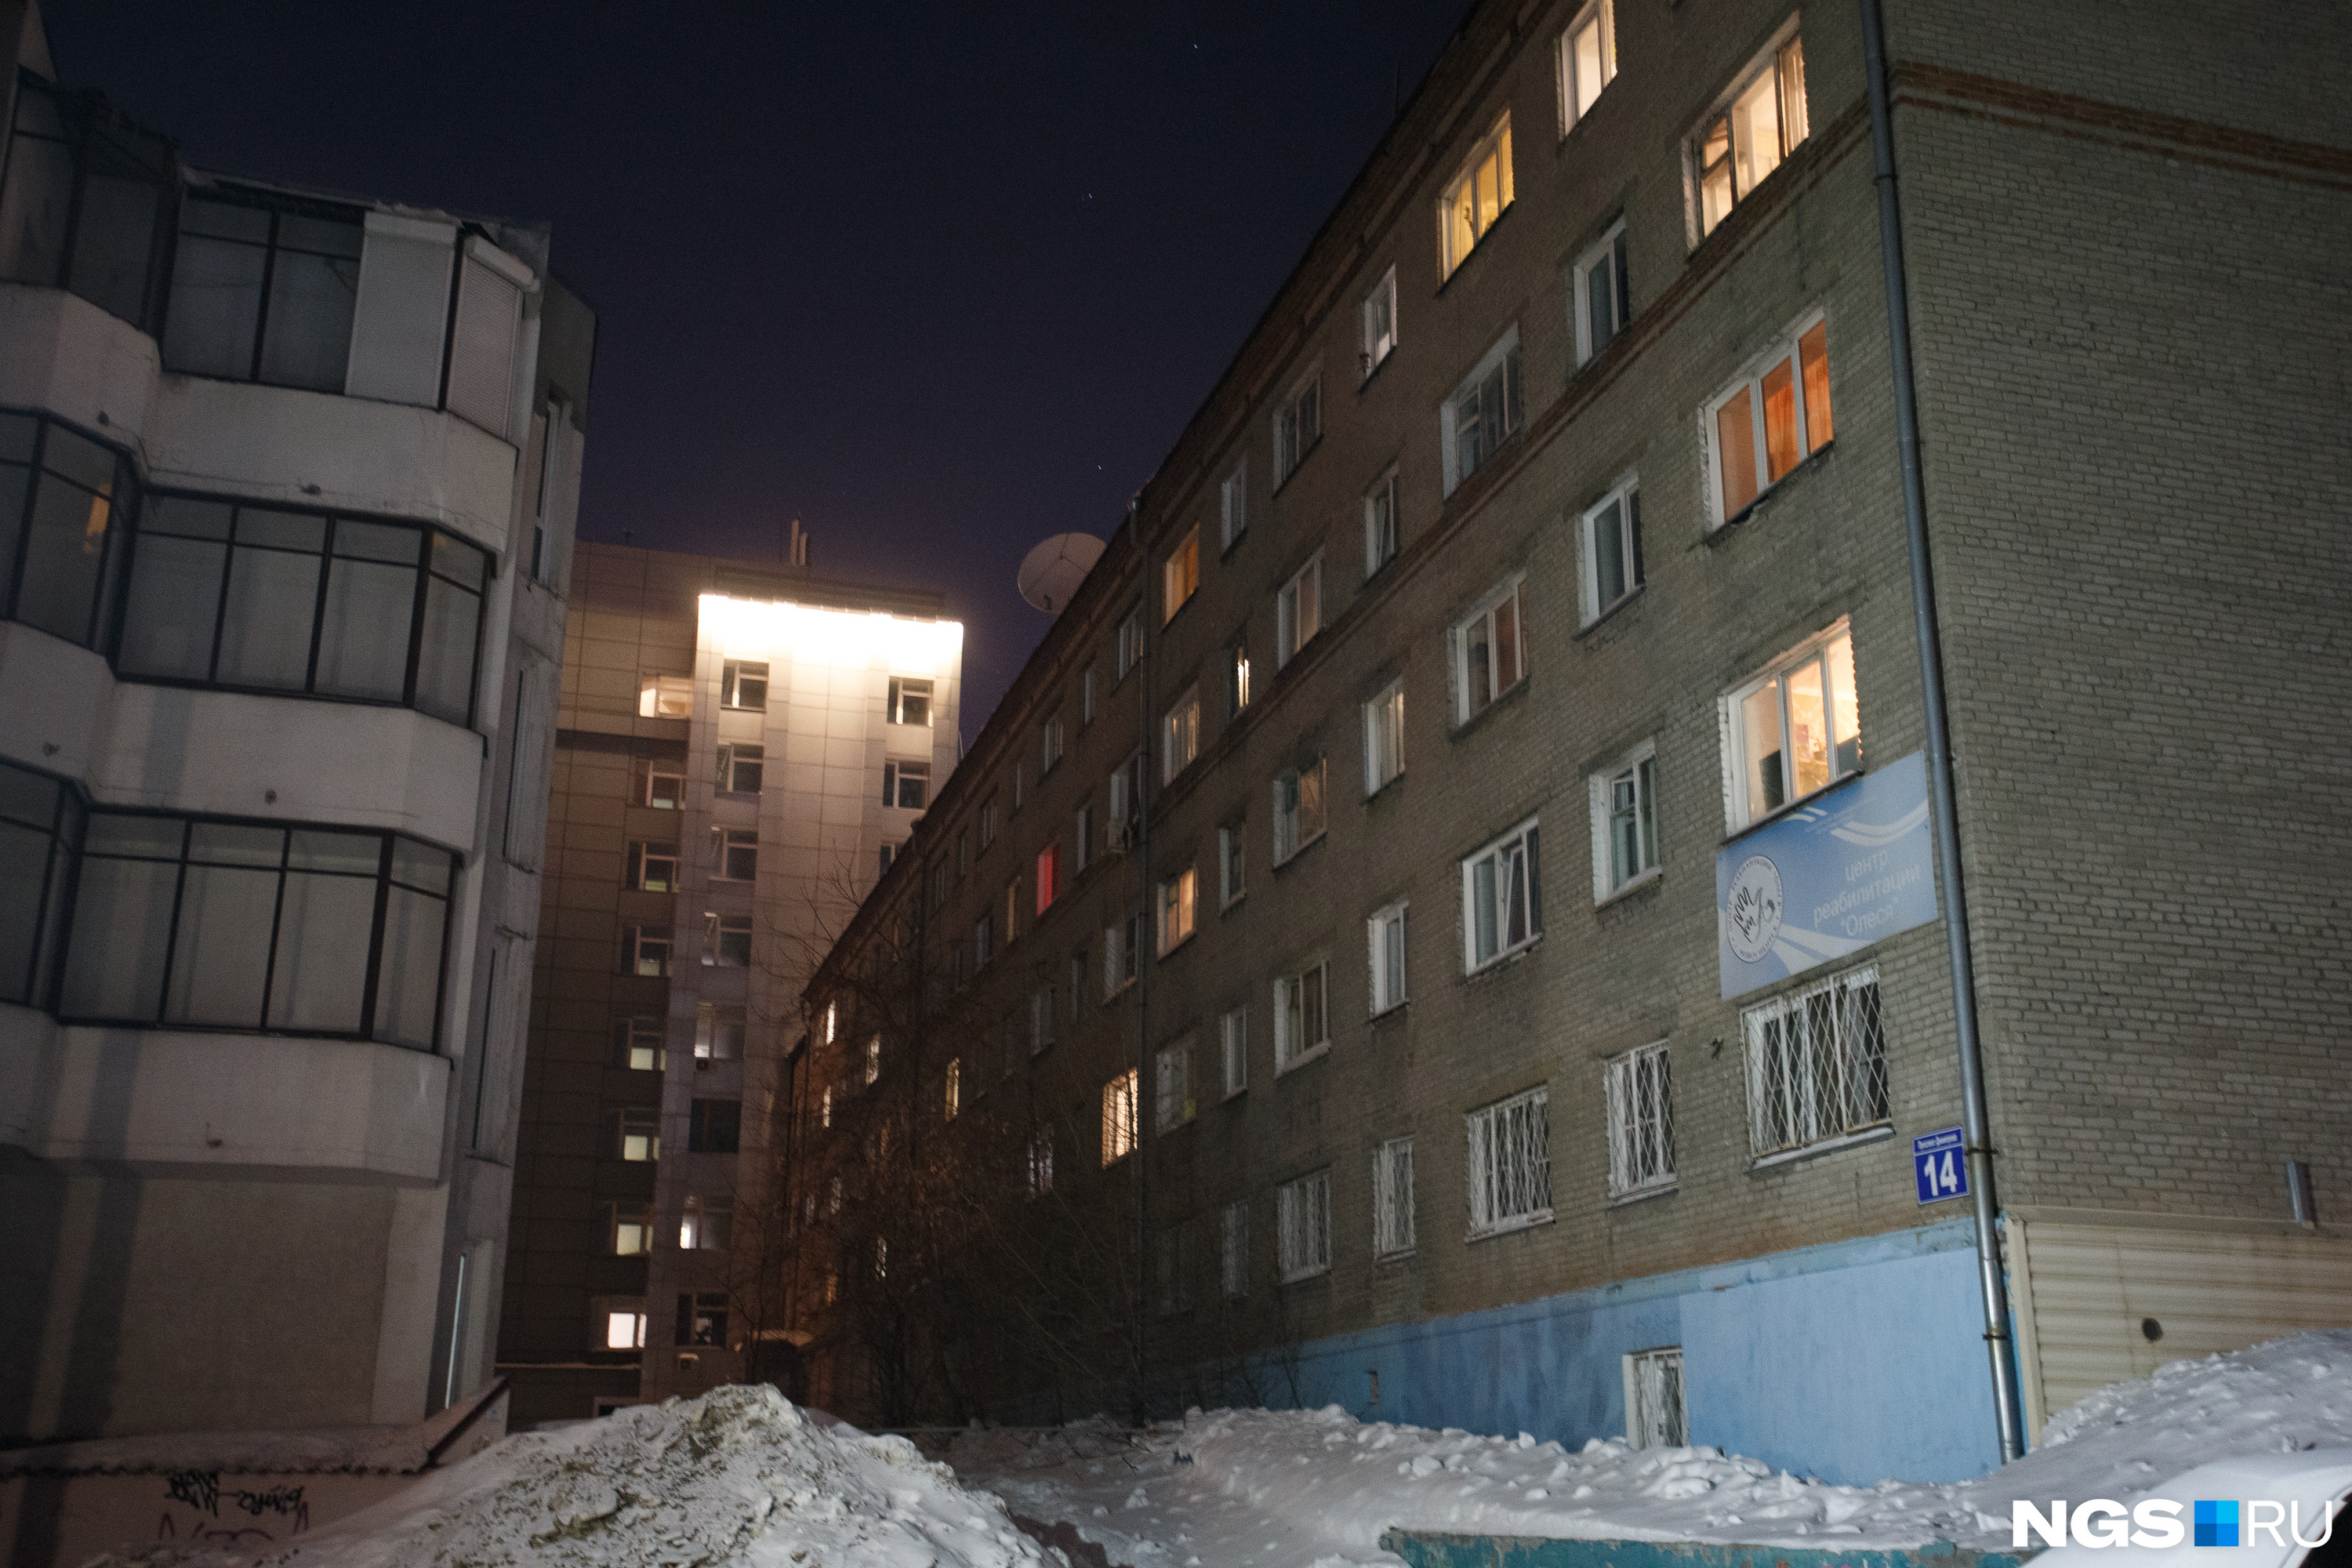 Дом с коммунальными квартирами находится в самом центре Новосибирска — недалеко от перекрестка Вокзальной магистрали с проспектом Димитрова